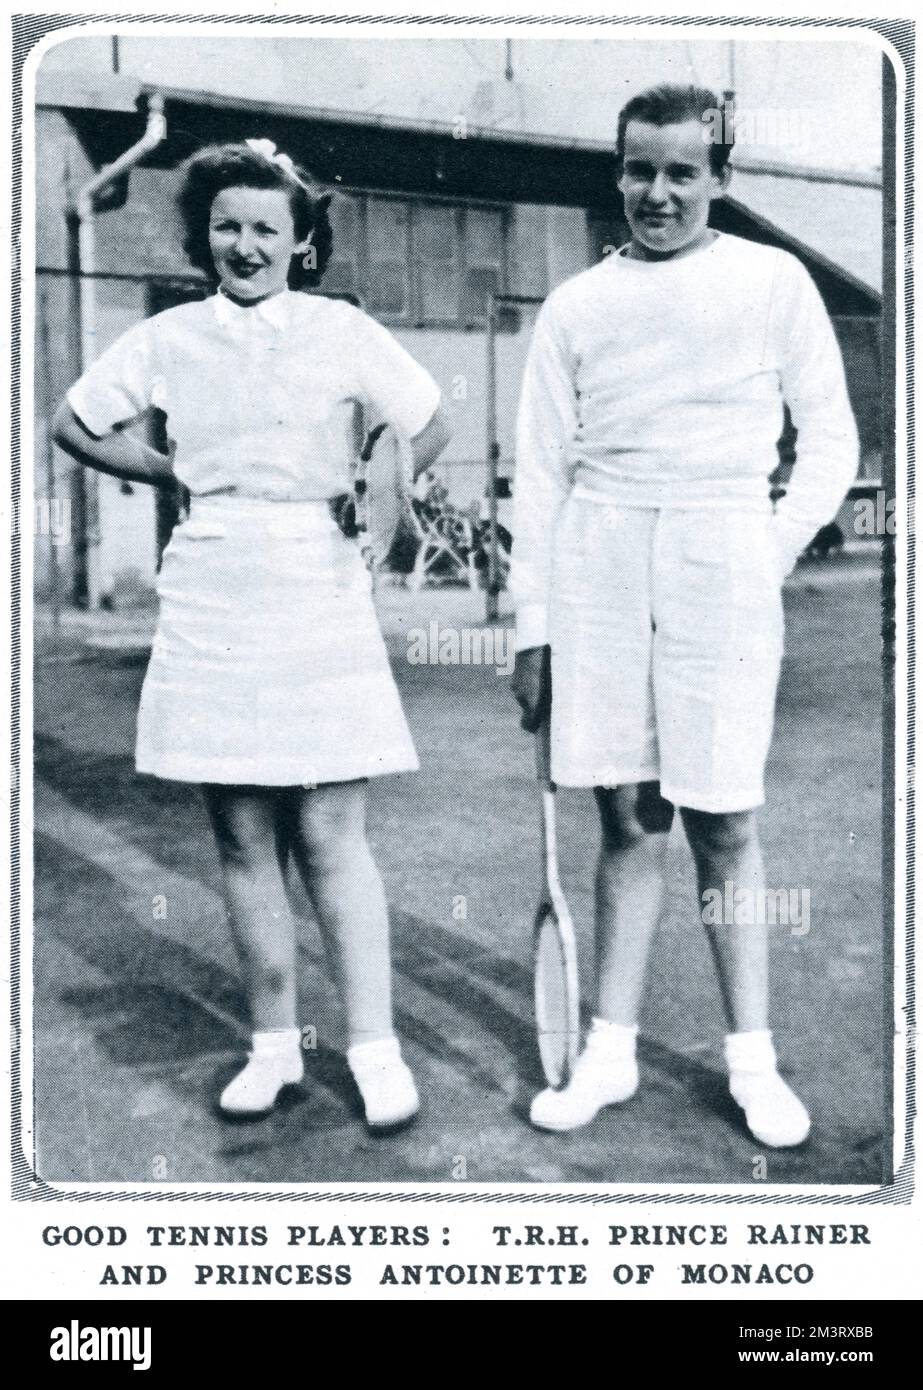 Le Prince Rainier de Monaco (plus tard le Prince Rainier III de Monaco) et sa sœur, la princesse Antoinette, photographiés à Monte Carlo jouant au tennis. Date: 1938 Banque D'Images